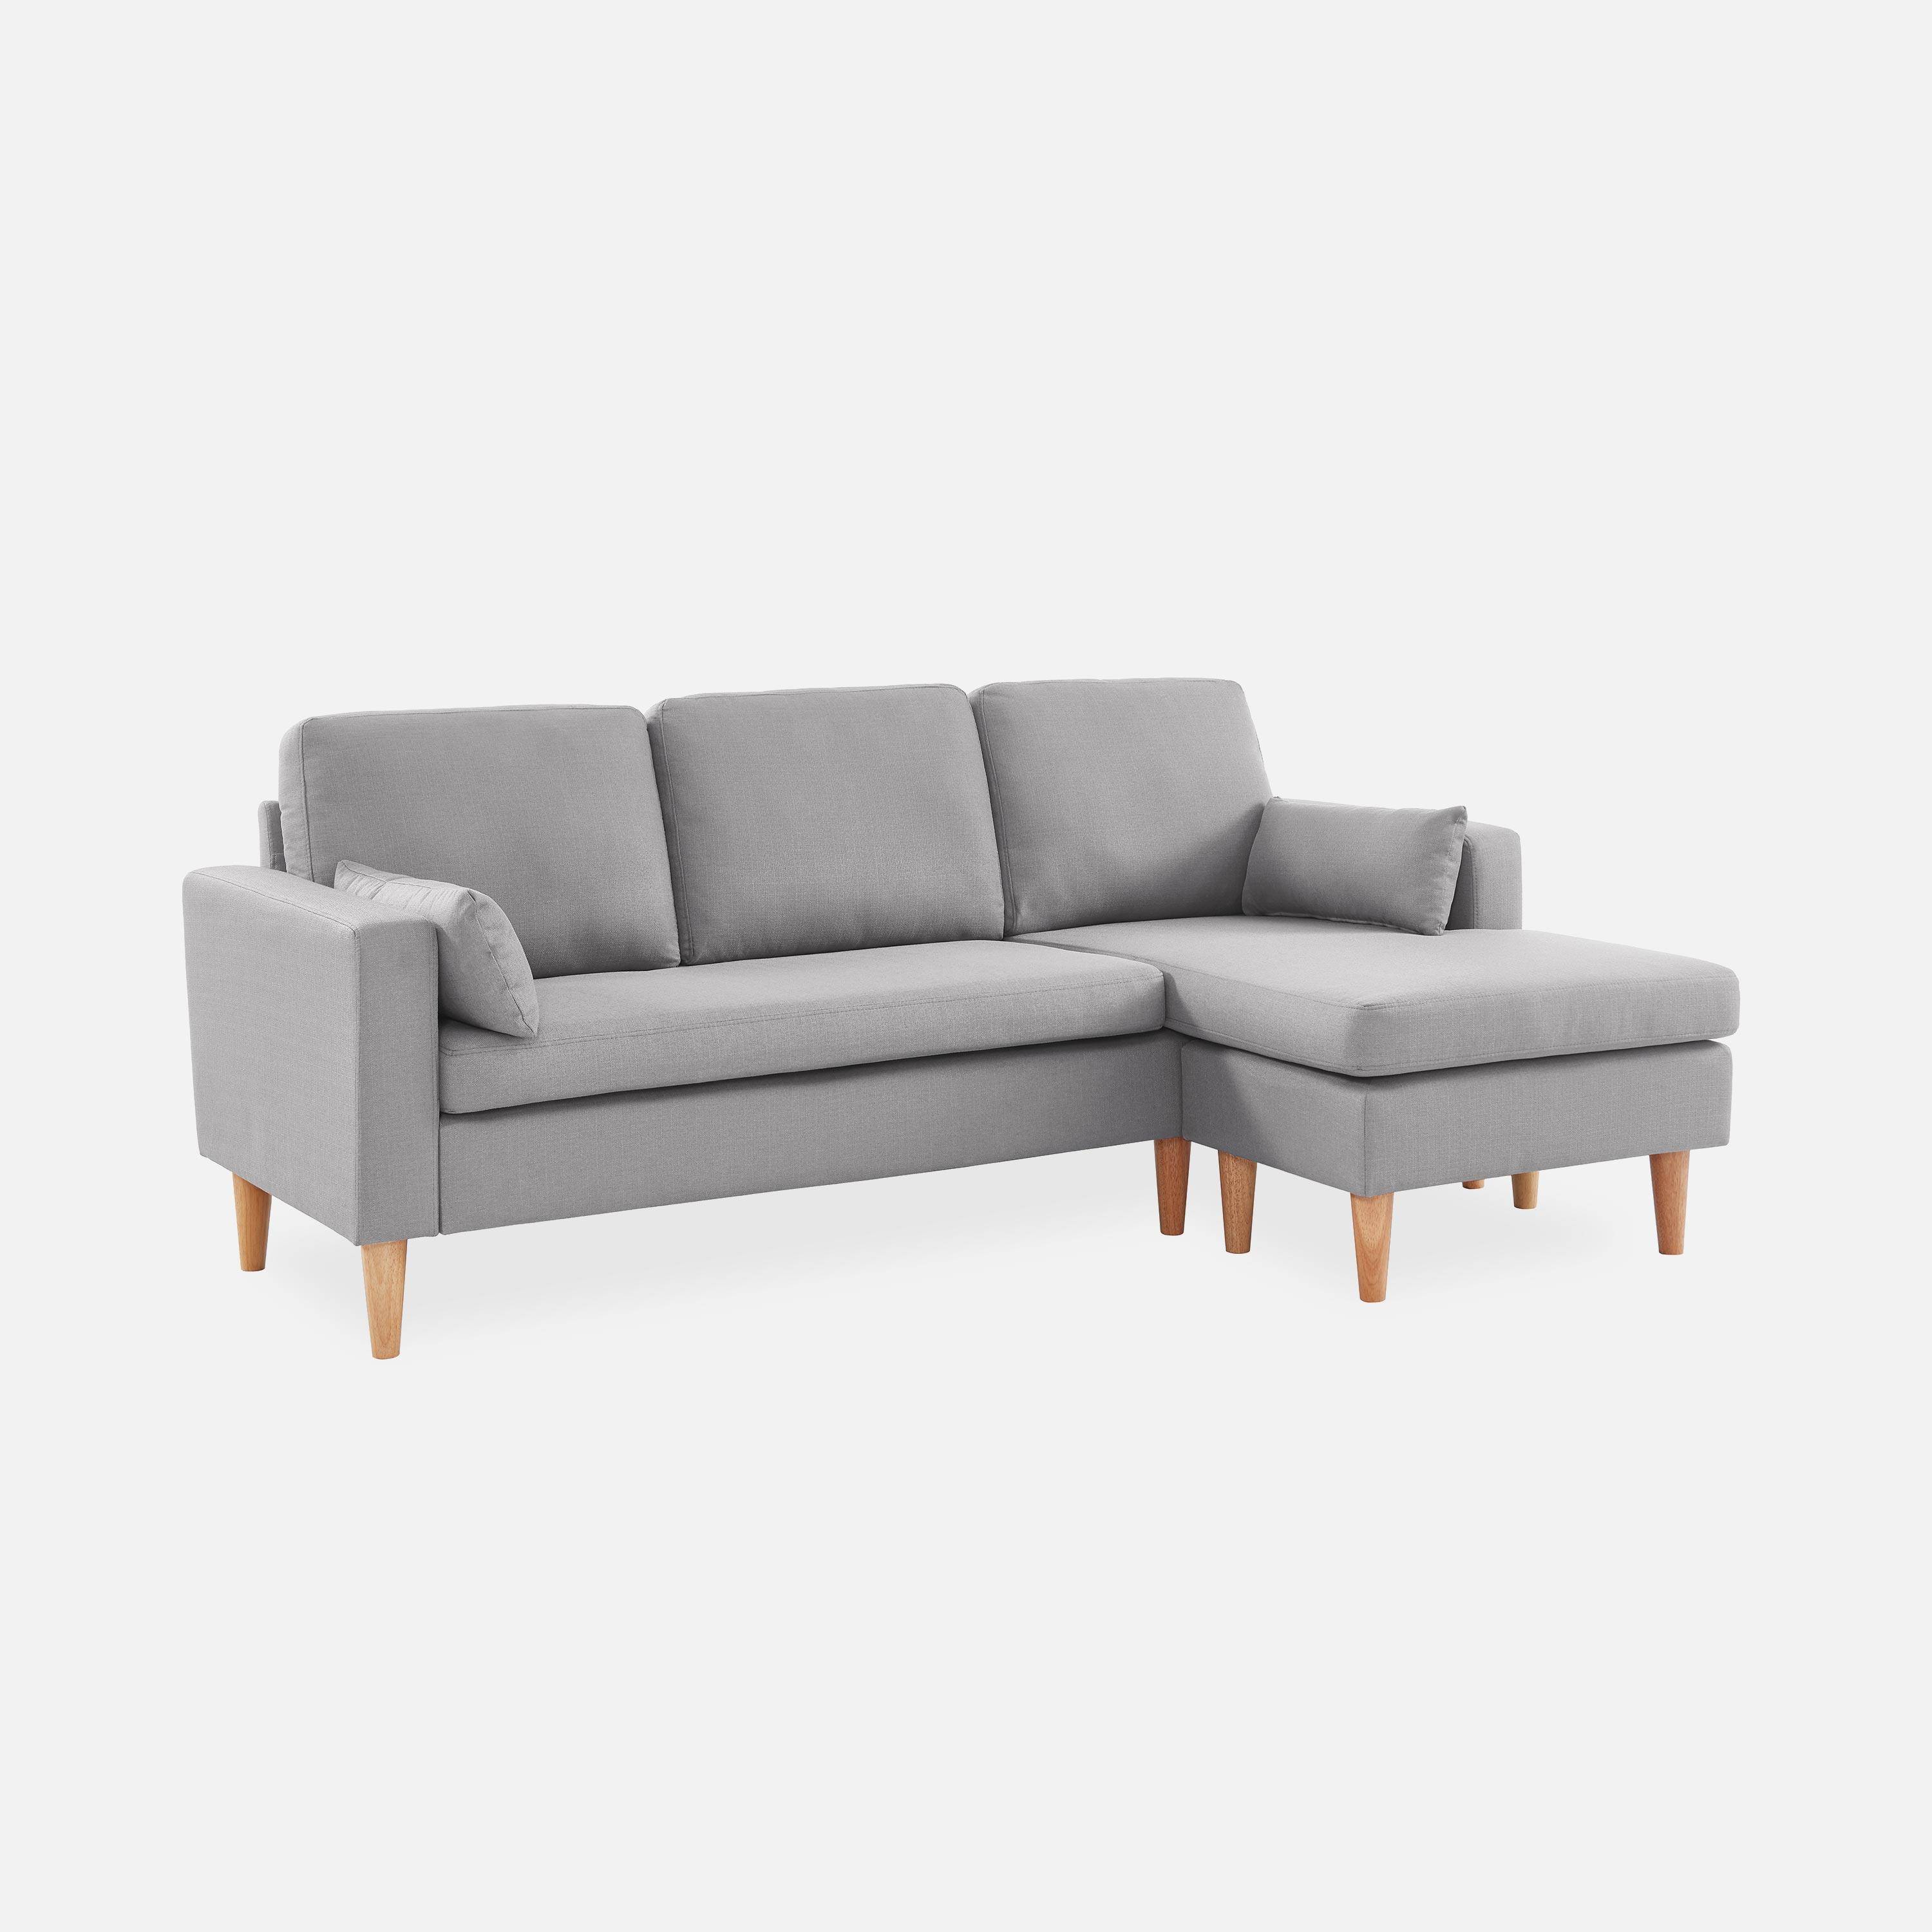 Fauteuil en tissu gris clair, canapé d'angle 3 places réversible fixe droit pieds bois, canapé scandinave  Photo1